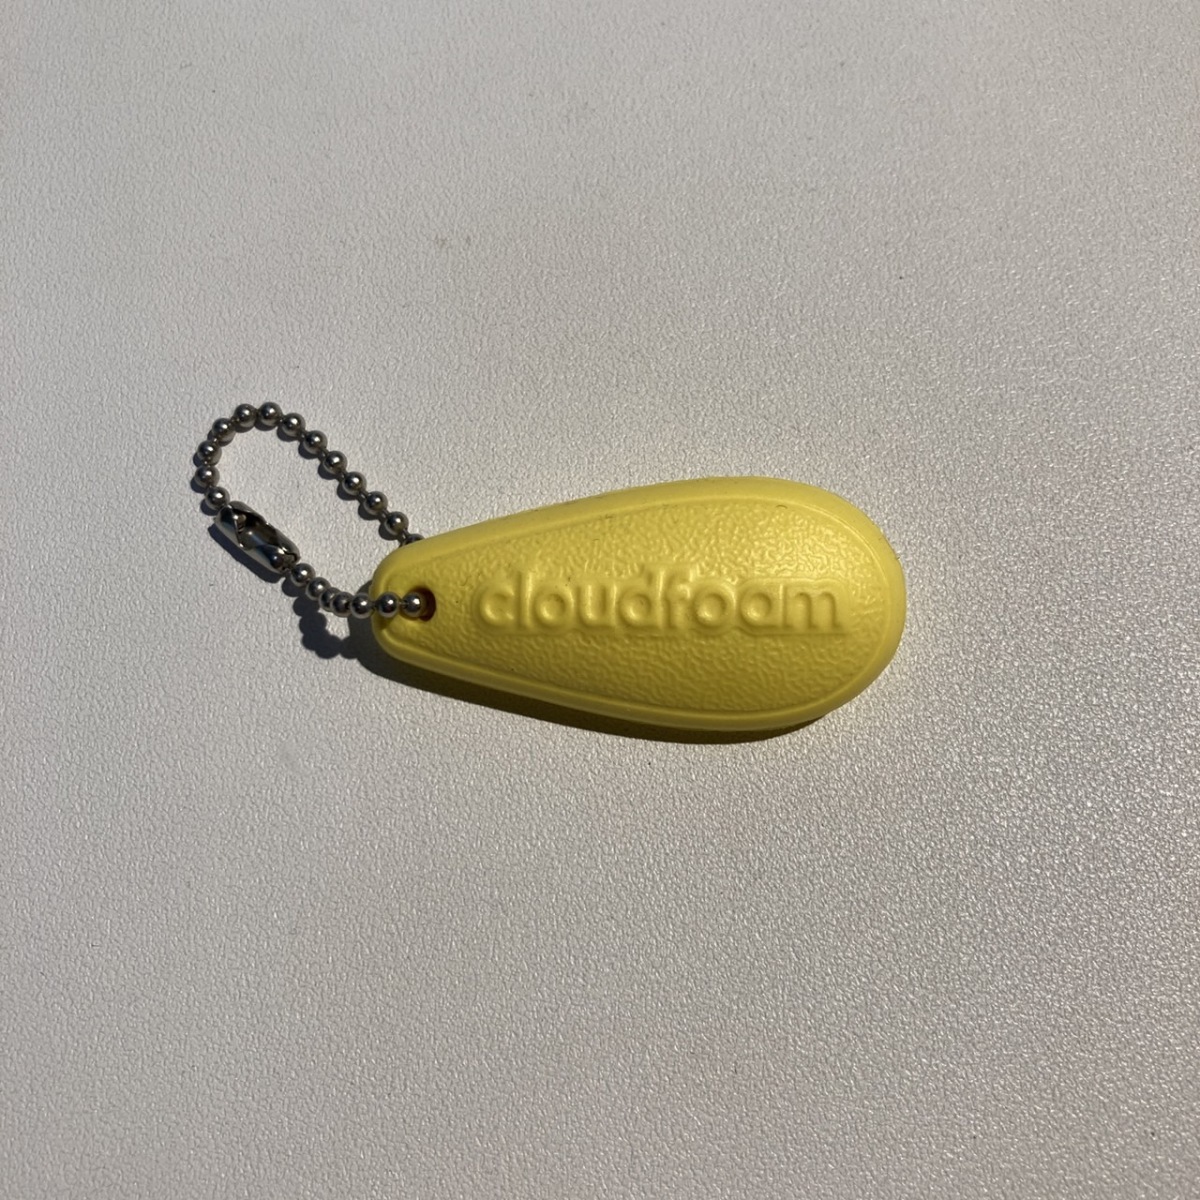 アディダス キーホルダー adidas cloudfoam ストラップ 黄色 - 일본